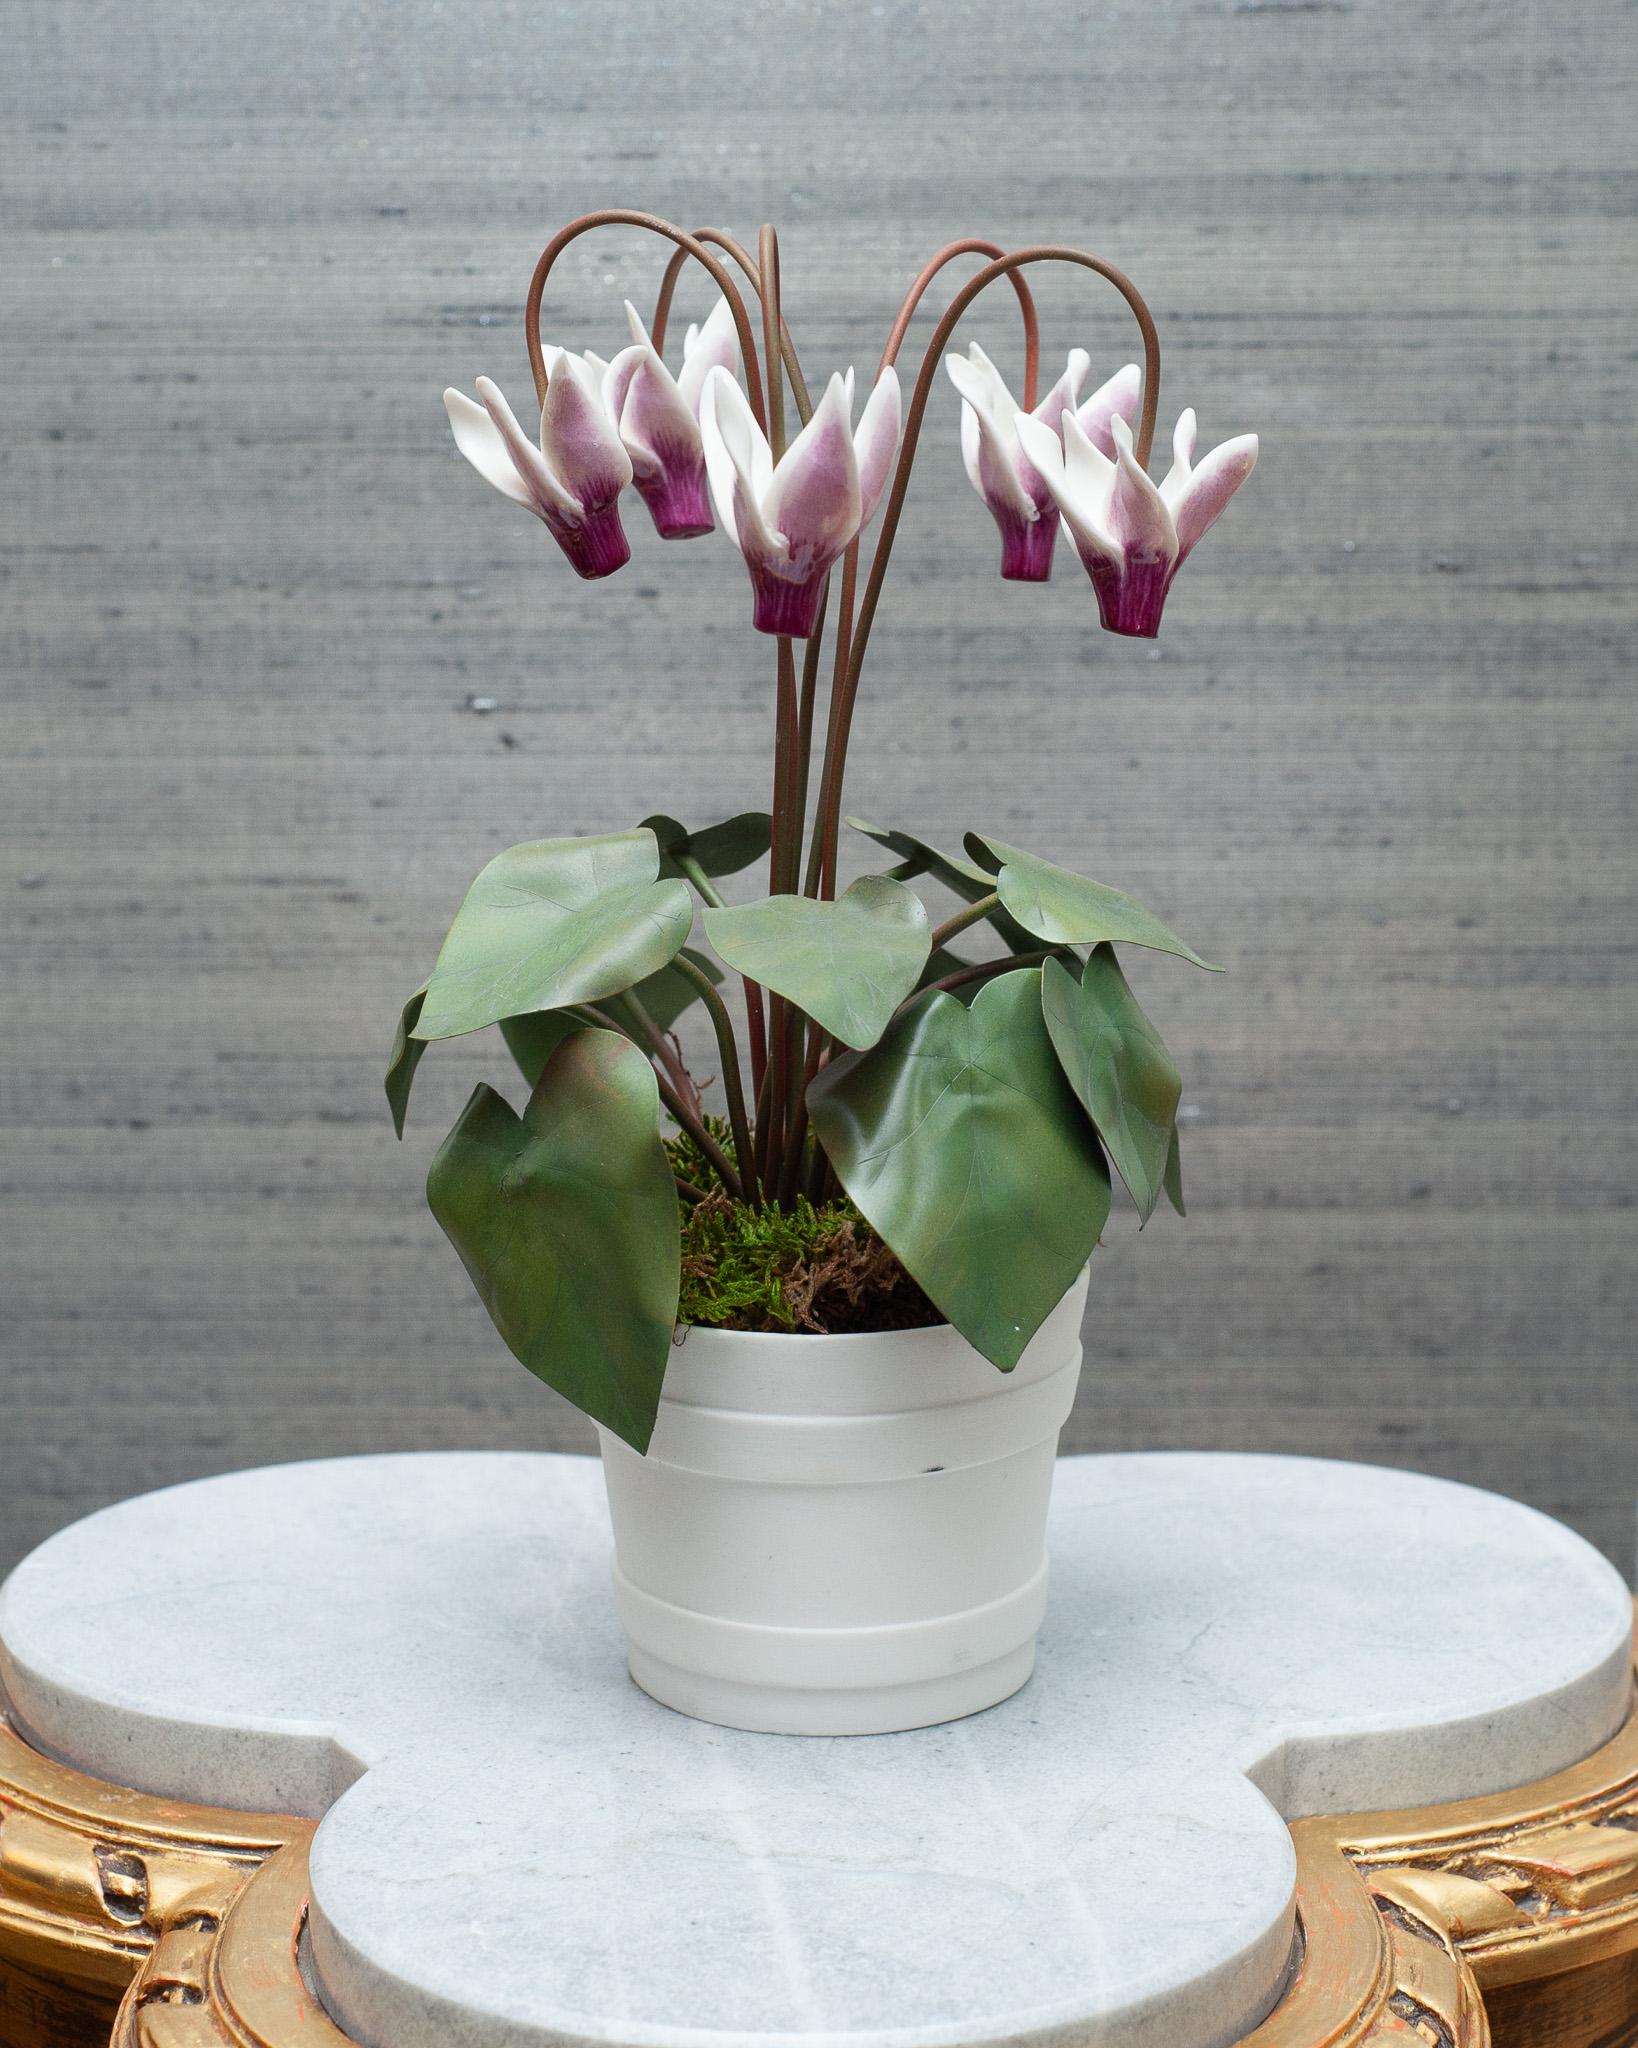 Verschönern Sie Ihren Tisch mit diesen zarten Porzellanblumen des französischen Künstlers Samuel Mazy, exklusiv bei Maison Nurita in Kanada. Mazy ist seit fast 20 Jahren als Keramikerin in Paris tätig. Er modelliert Porzellanblumen zu poetischen